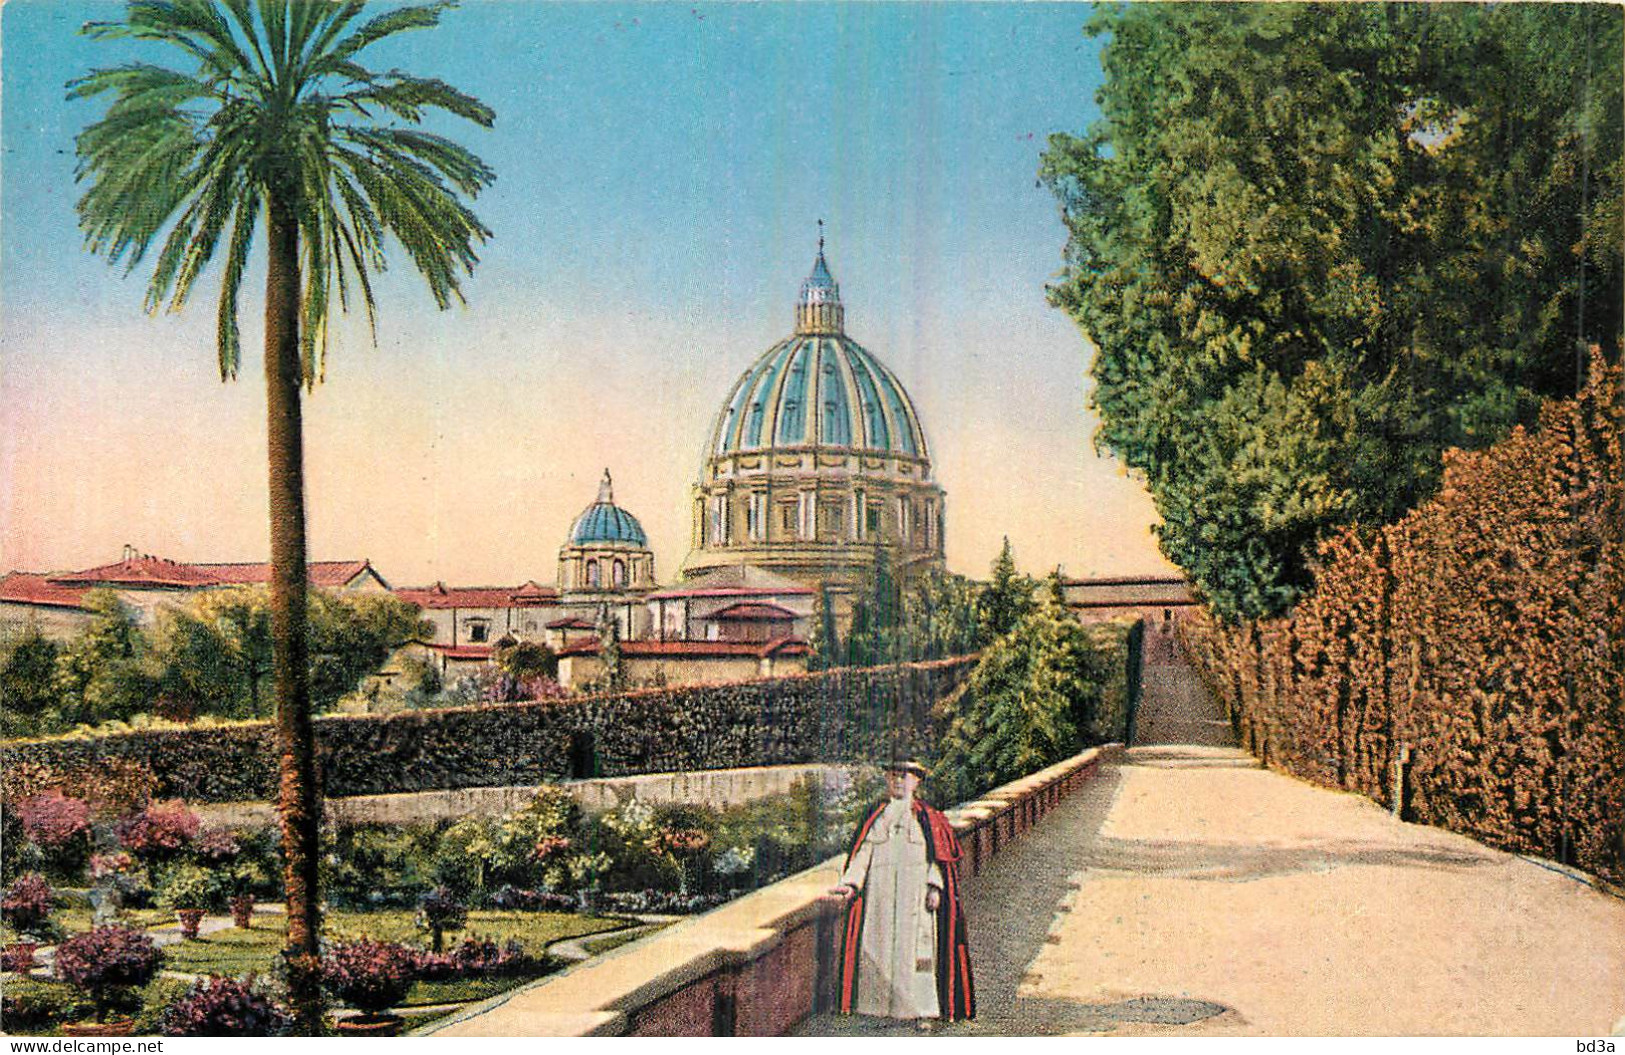 ROMA VATICAN Giardino - Vaticaanstad